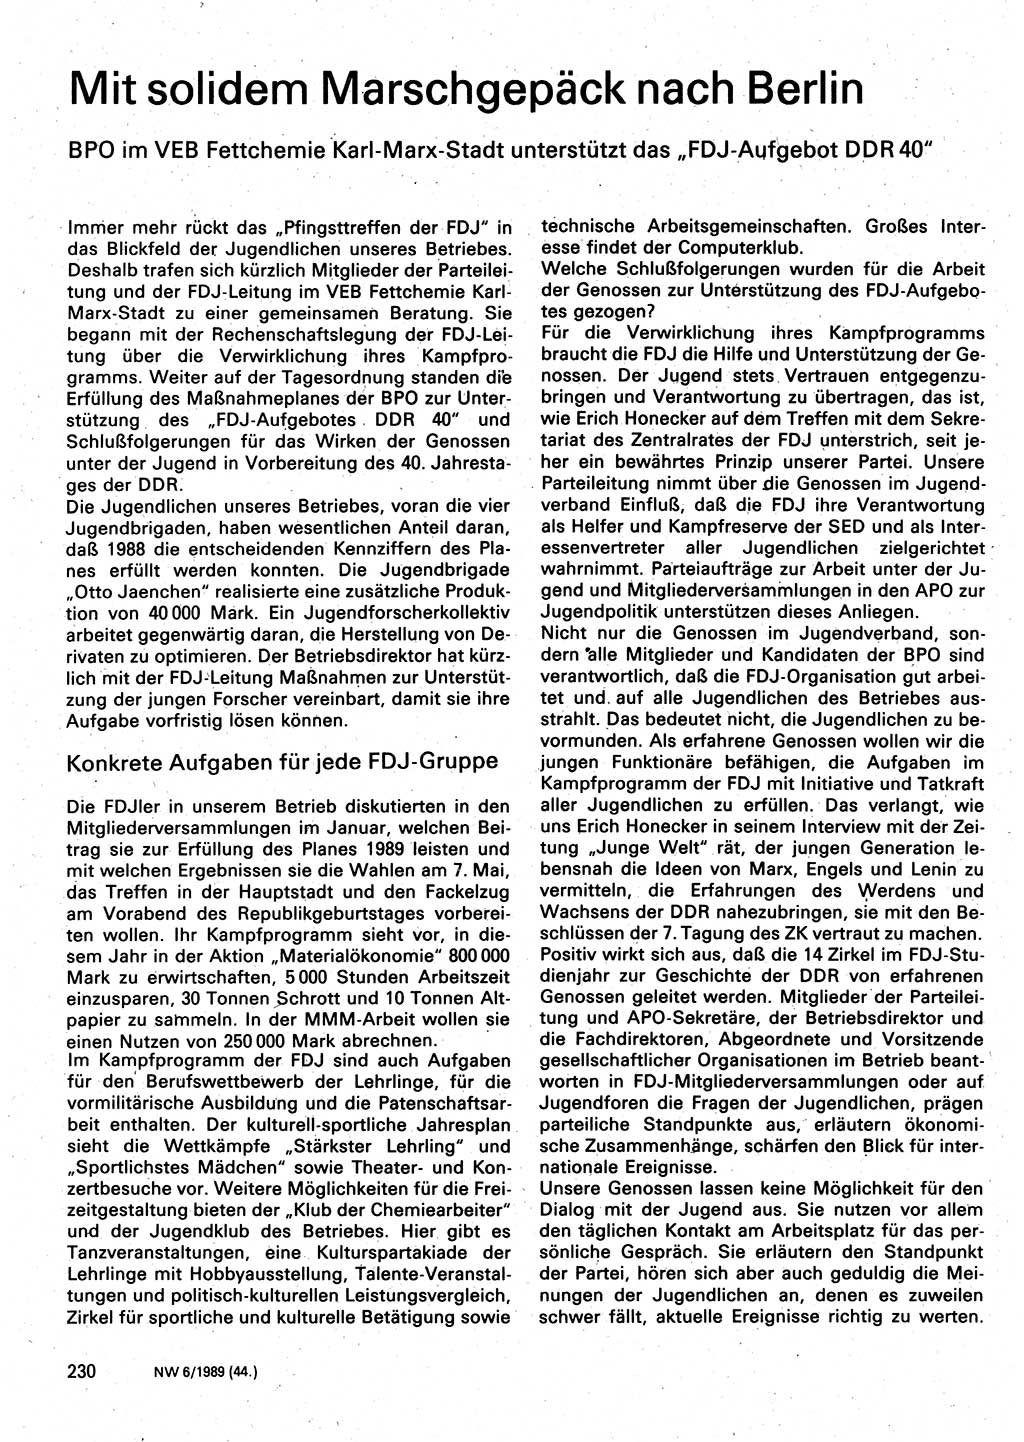 Neuer Weg (NW), Organ des Zentralkomitees (ZK) der SED (Sozialistische Einheitspartei Deutschlands) für Fragen des Parteilebens, 44. Jahrgang [Deutsche Demokratische Republik (DDR)] 1989, Seite 230 (NW ZK SED DDR 1989, S. 230)